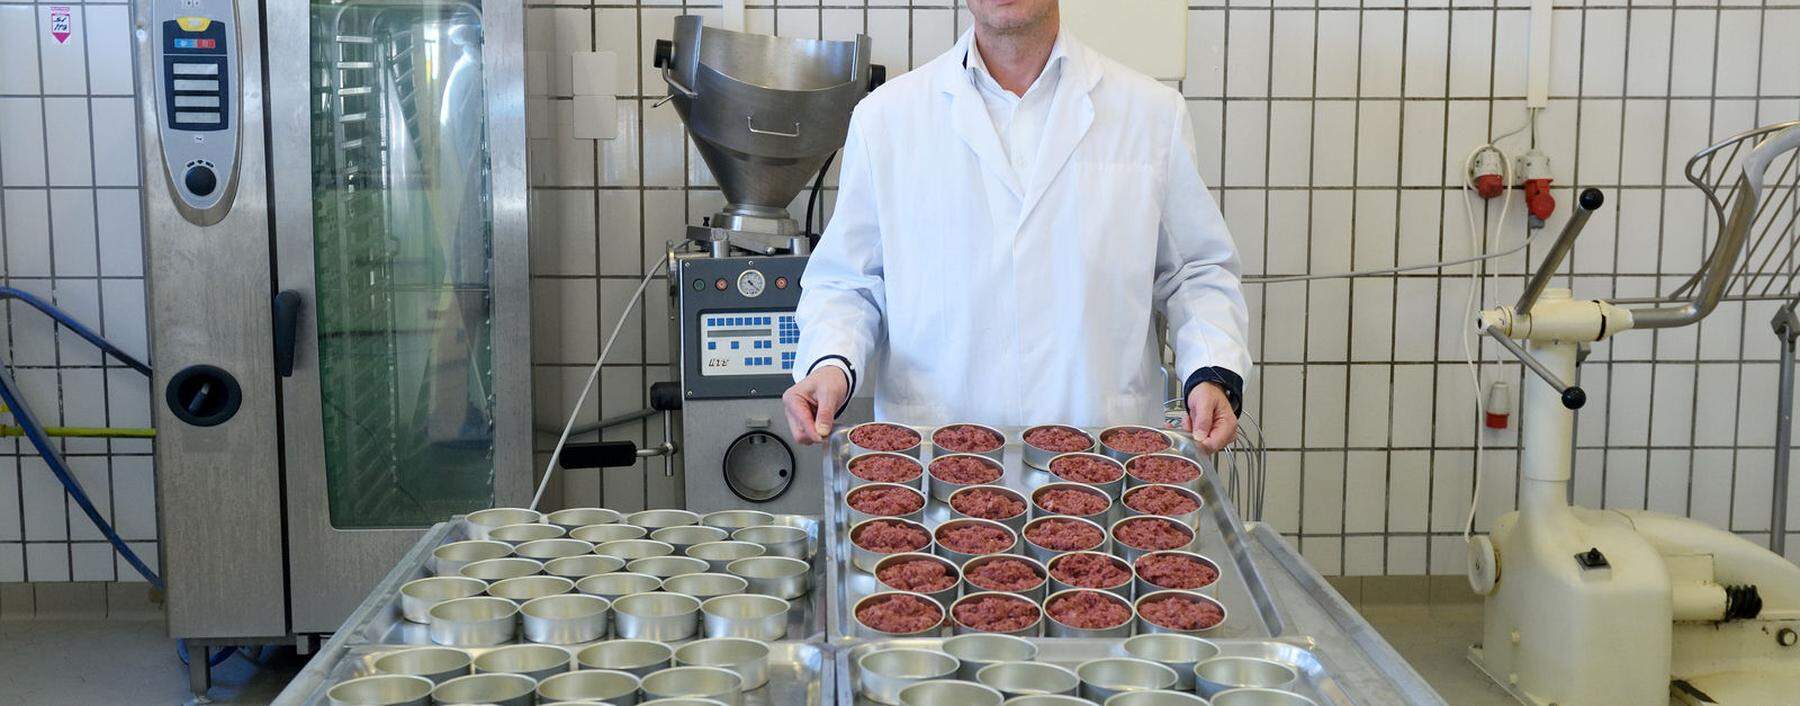 Peter Spak hat nach gut 35 Jahren die Produktion von Corned Beef in der Manufaktur Hink wieder aufgenommen. Pasten, Sulzen und Terrinen produziert er nach wie vor.